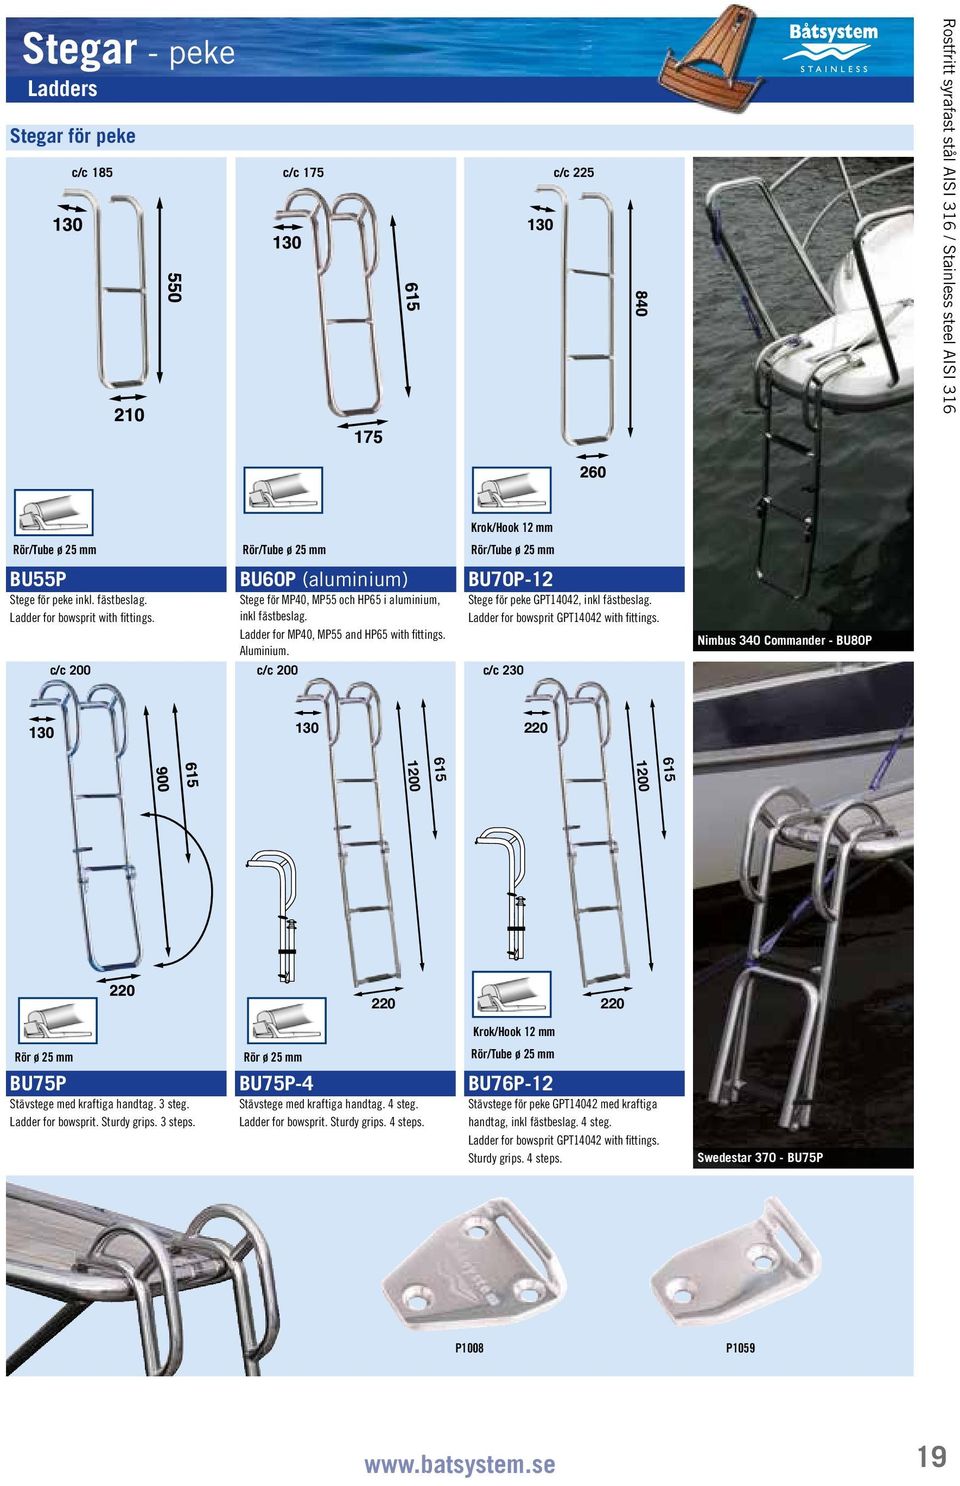 c/c 200 c/c 200 c/c 230 Krok/Hook 12 mm BU70P12 Stege för peke GPT14042, inkl fästbeslag. Ladder for bowsprit GPT14042 with fittings.